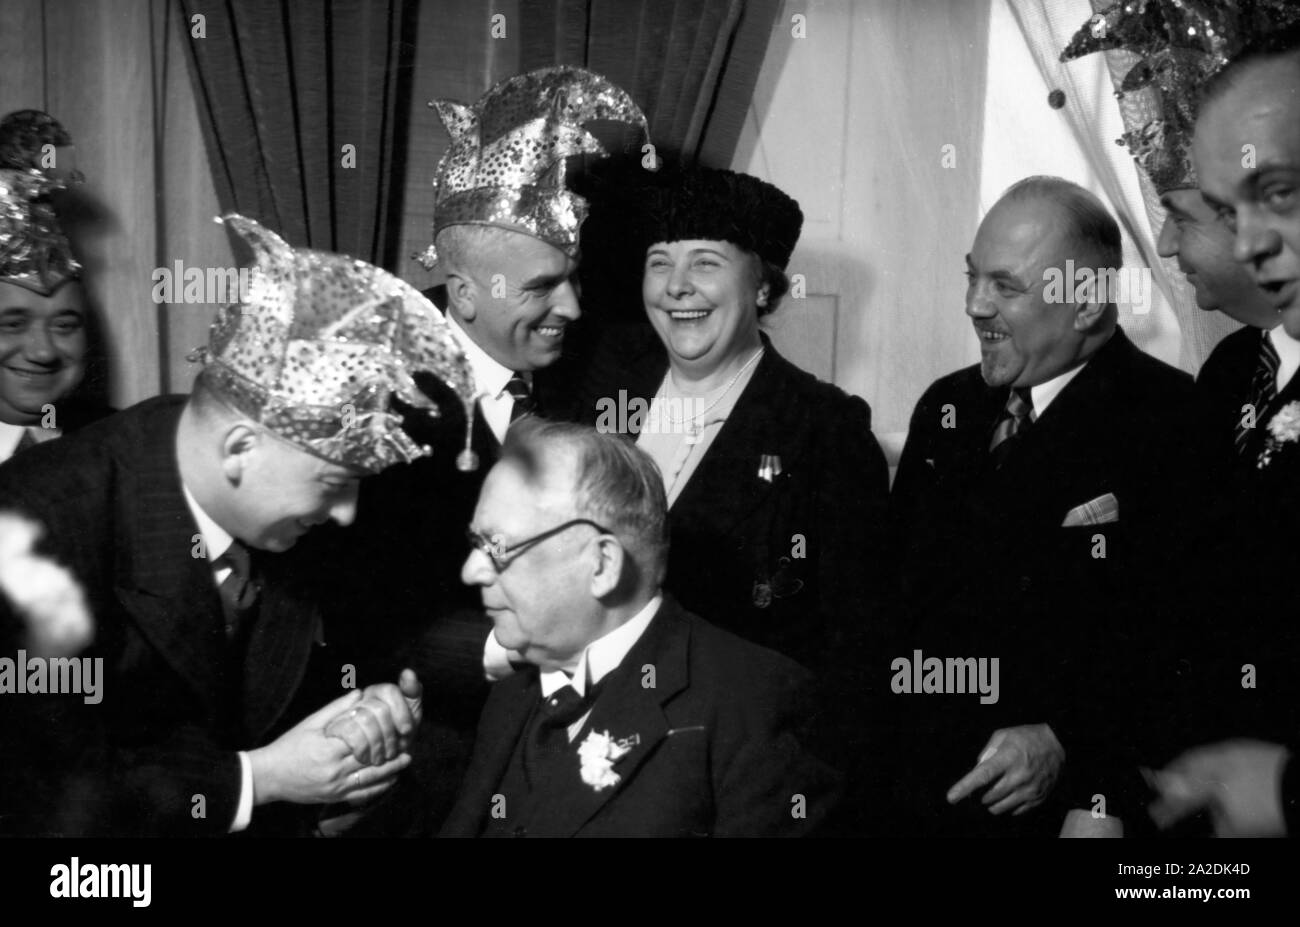 Offizielle und Granden der Magonza Fastnacht feiern die Kampagne 1938. Funzionari e presidenti celebra il carnevale 1938 presso la città di Magonza. Foto Stock